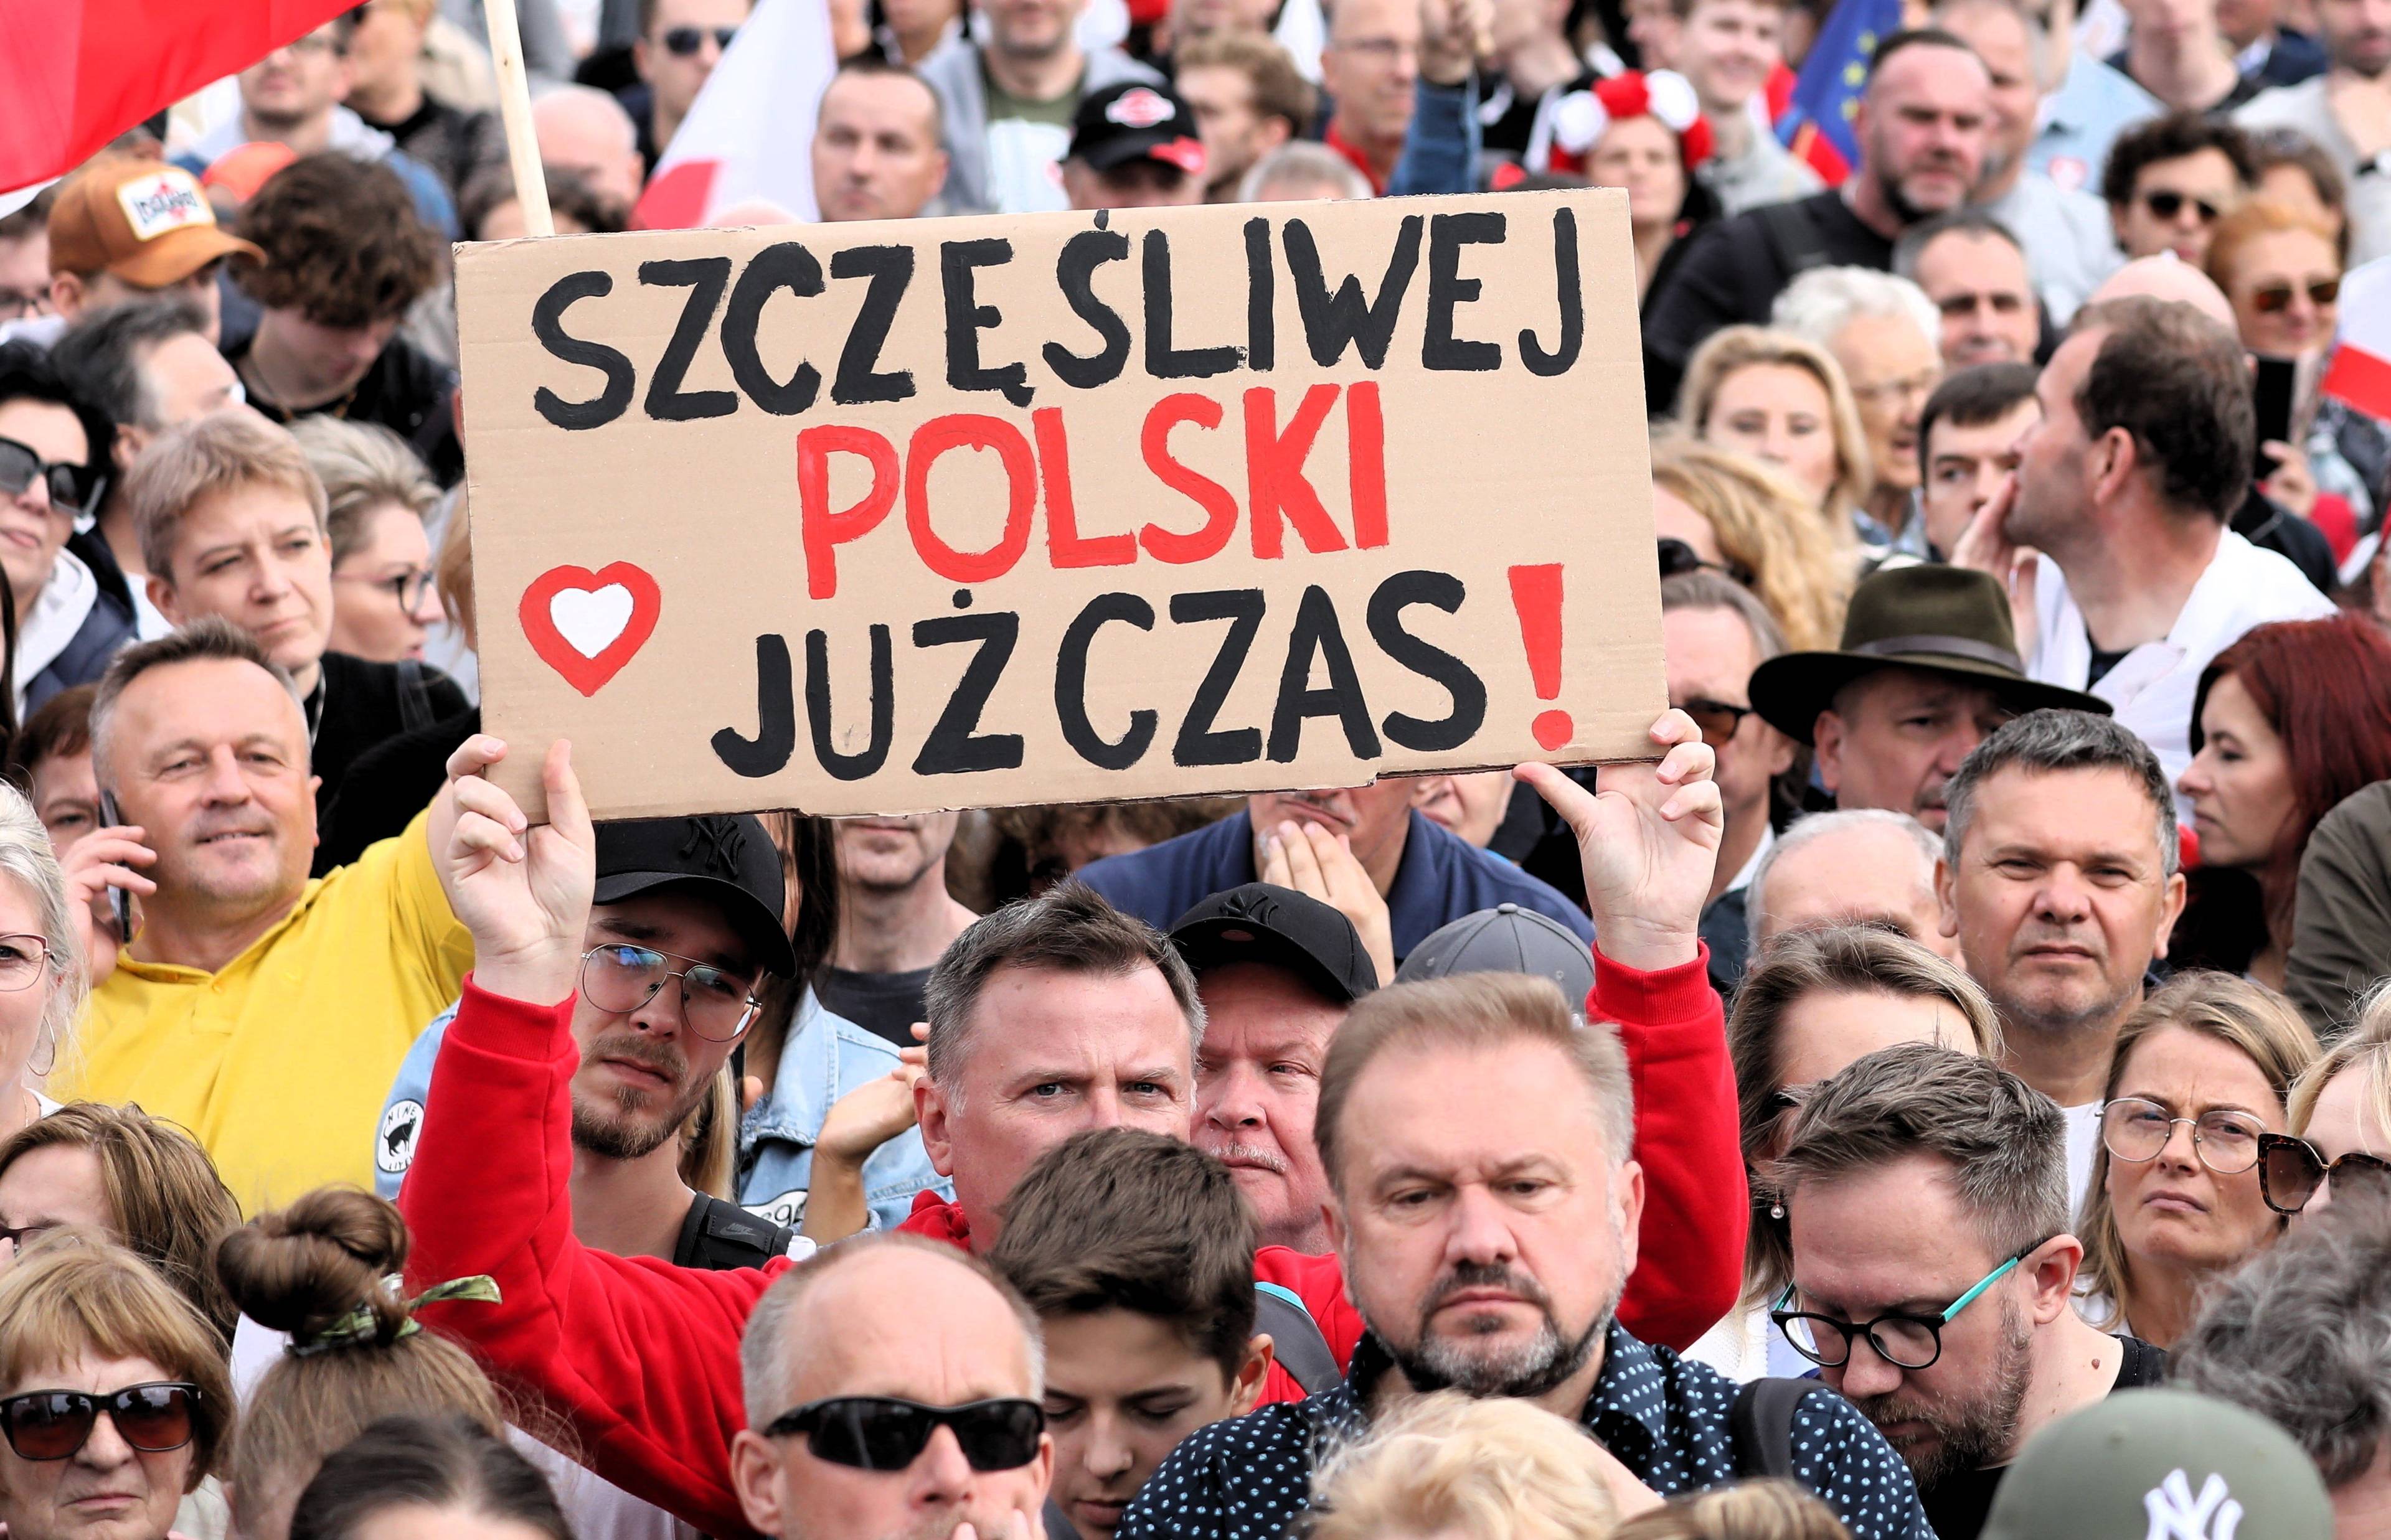 Tłum ludzi, mężczyzna trzyma plansze z napisem Szczęśliwej Polski już czas